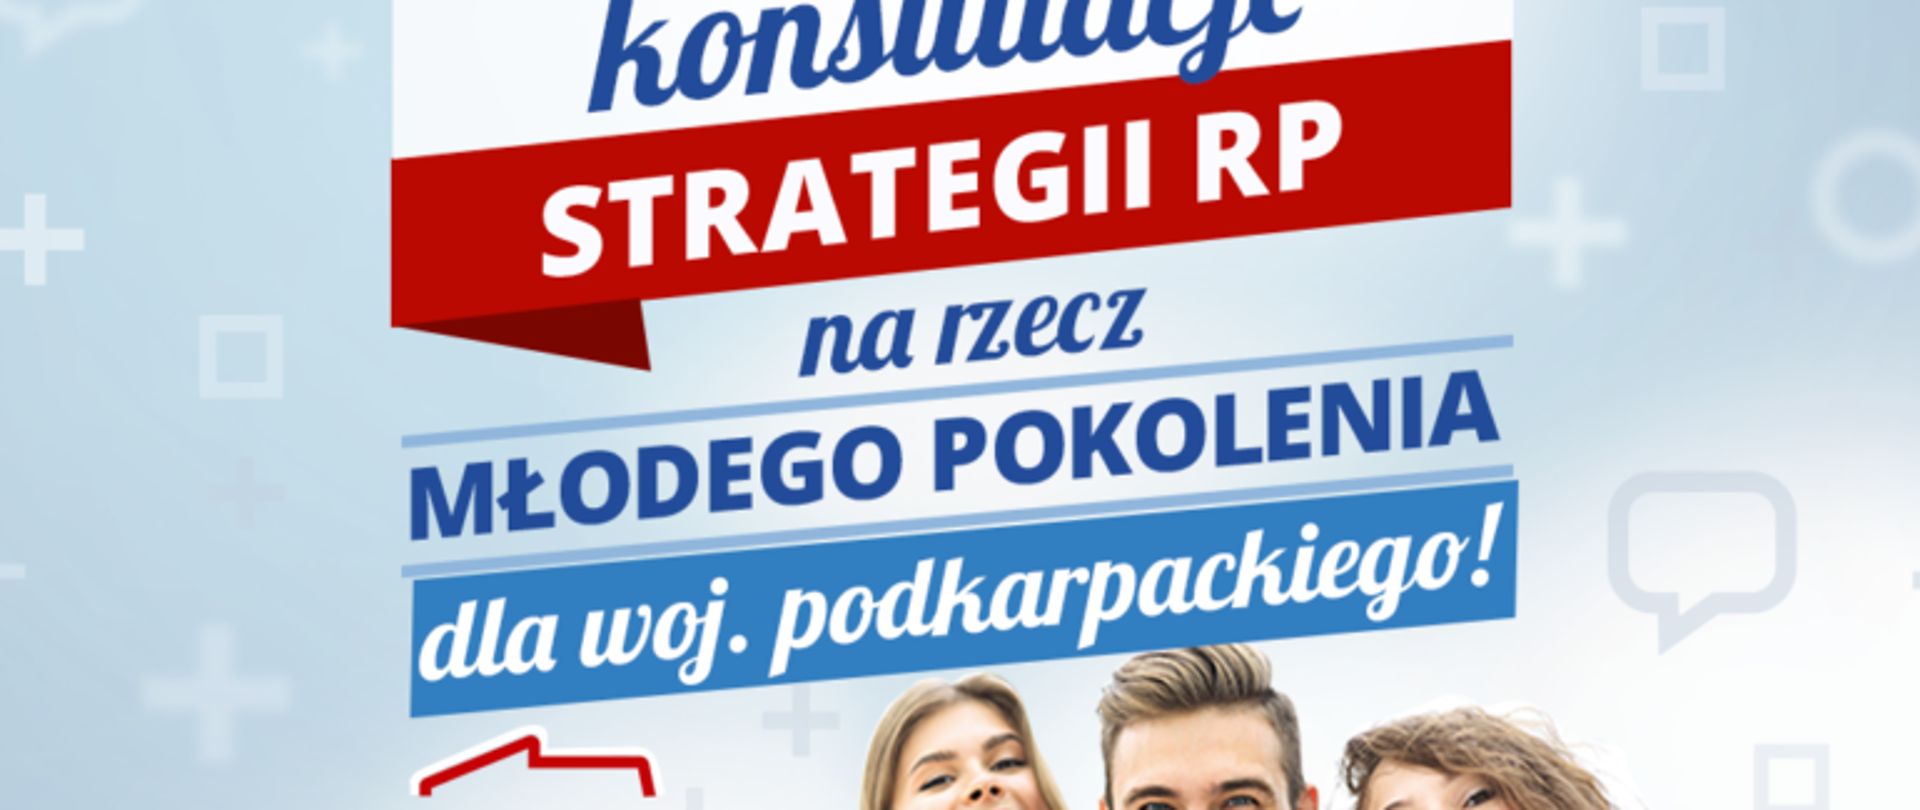 Konsultacje Strategii RP na rzecz młodego pokolenia dla woj. podkarpackiego